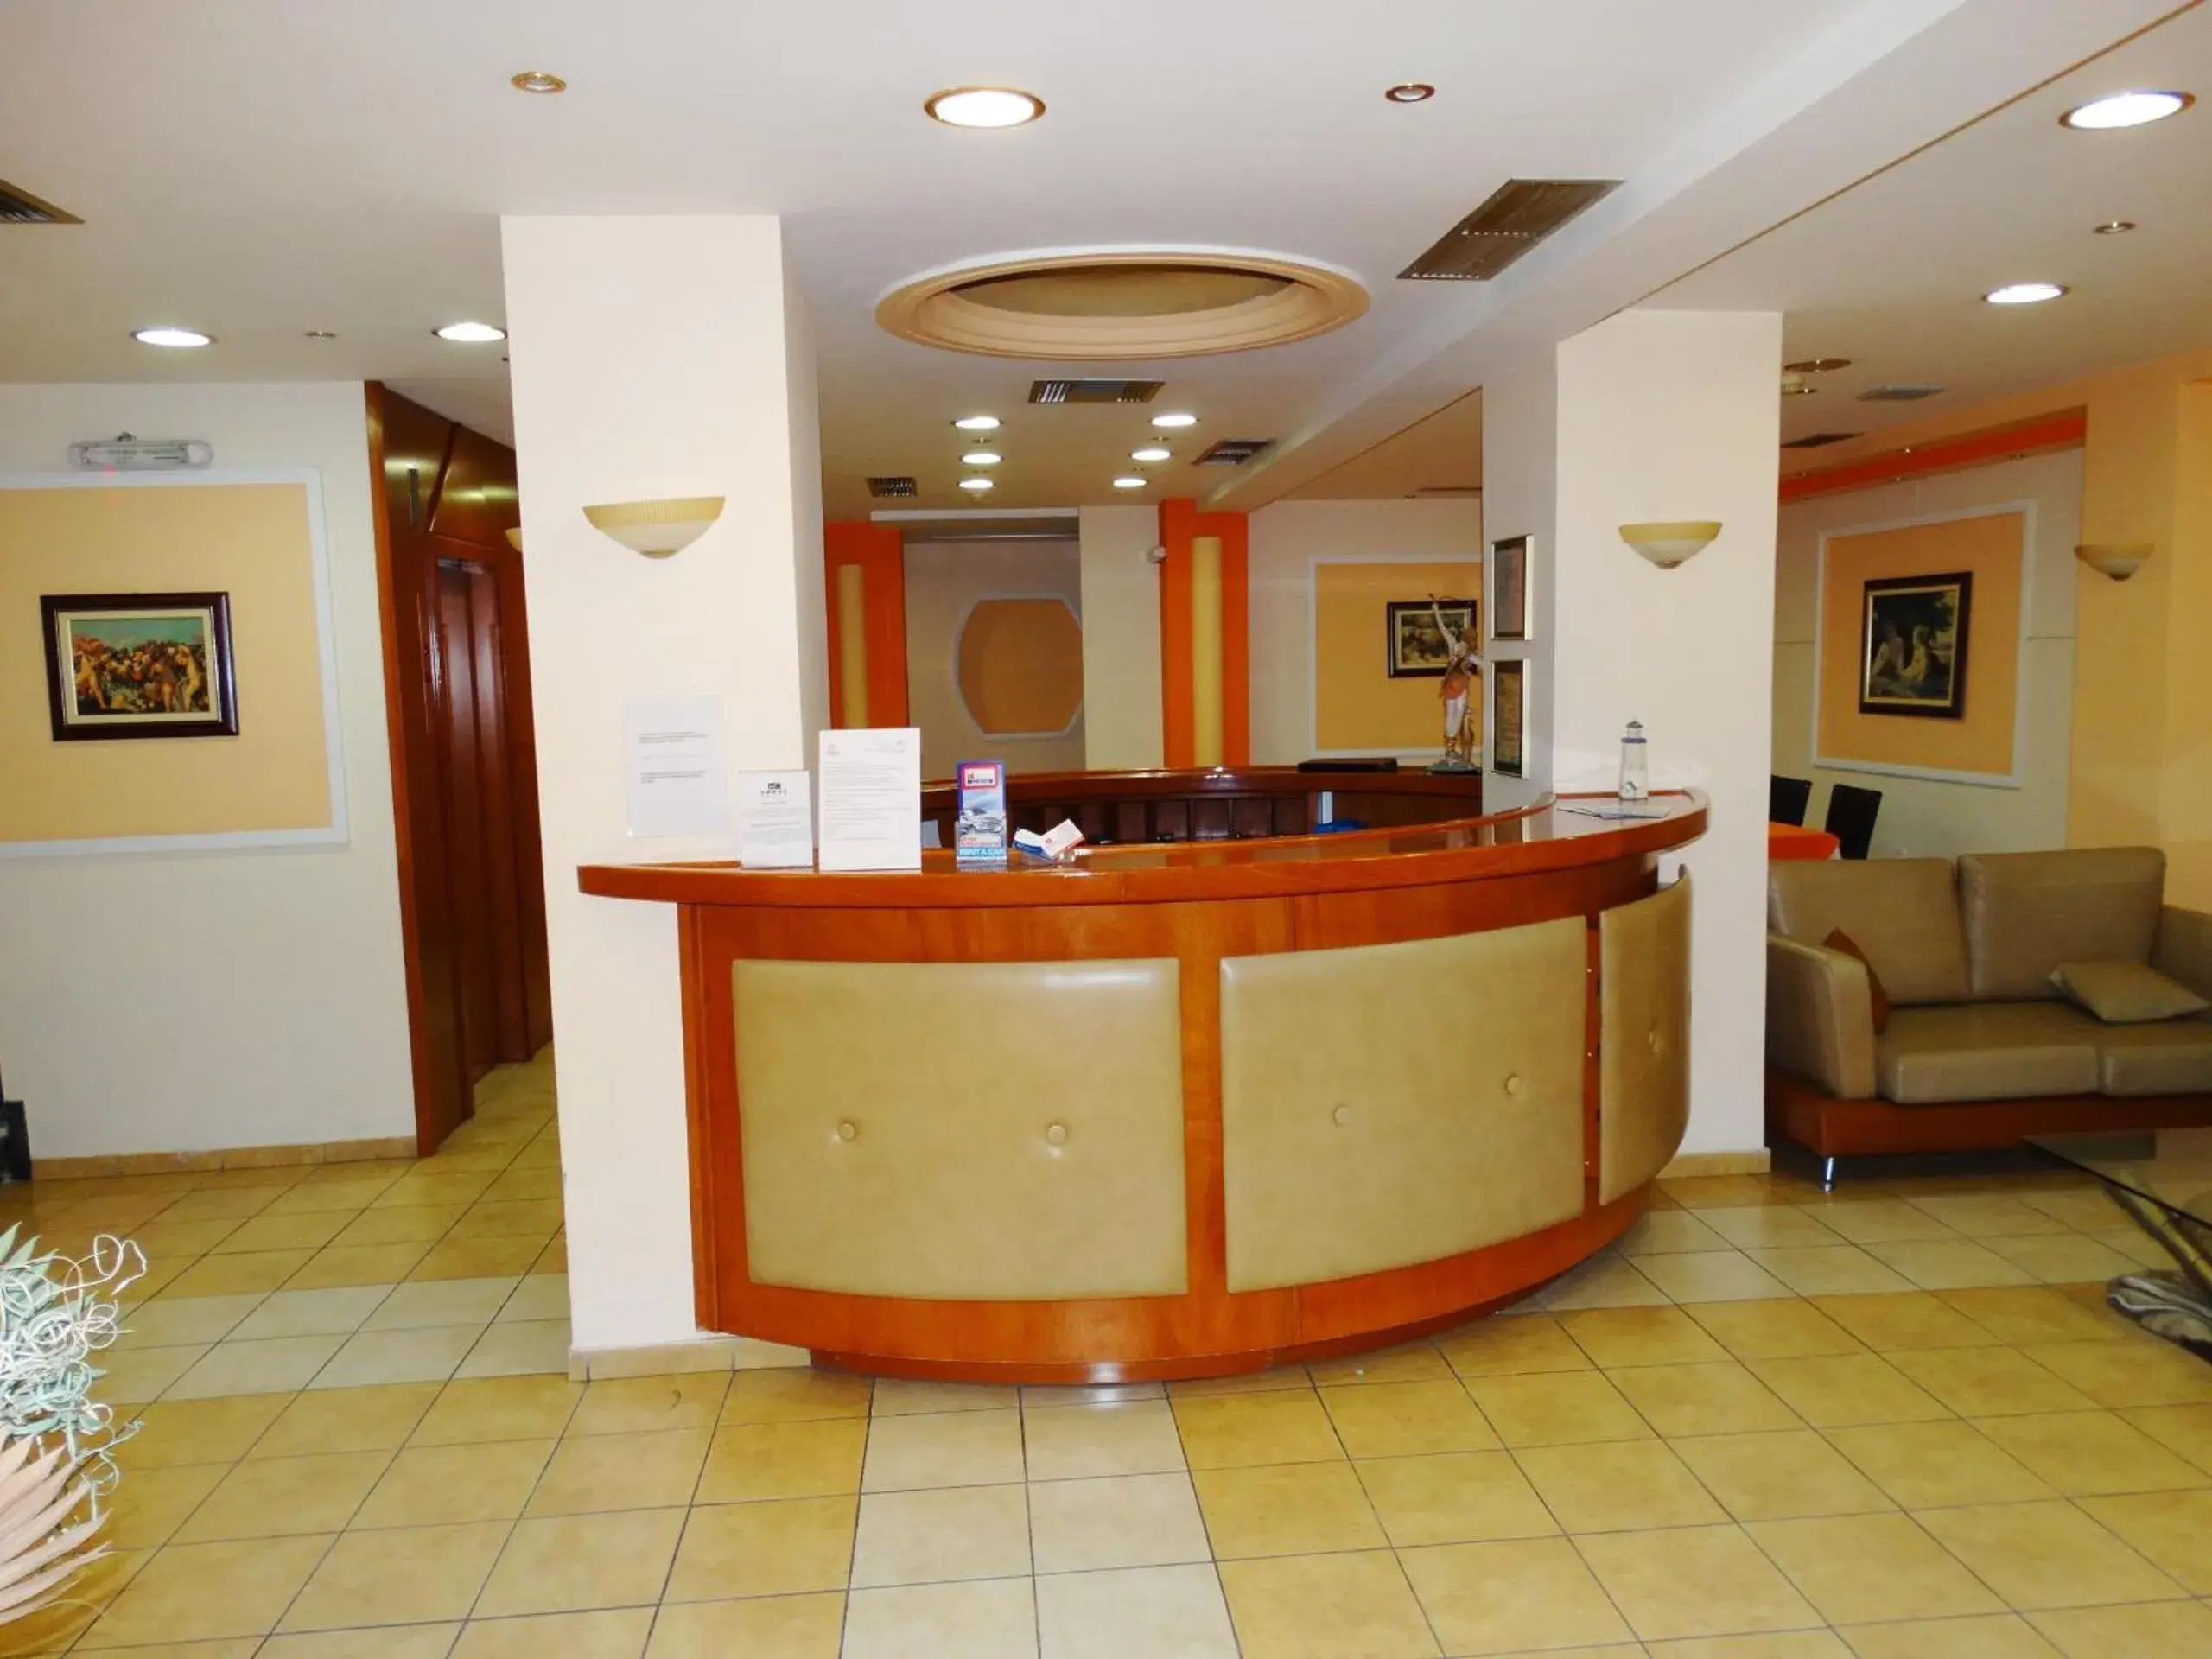 Lobby or reception, Lobby/Reception in Faros II